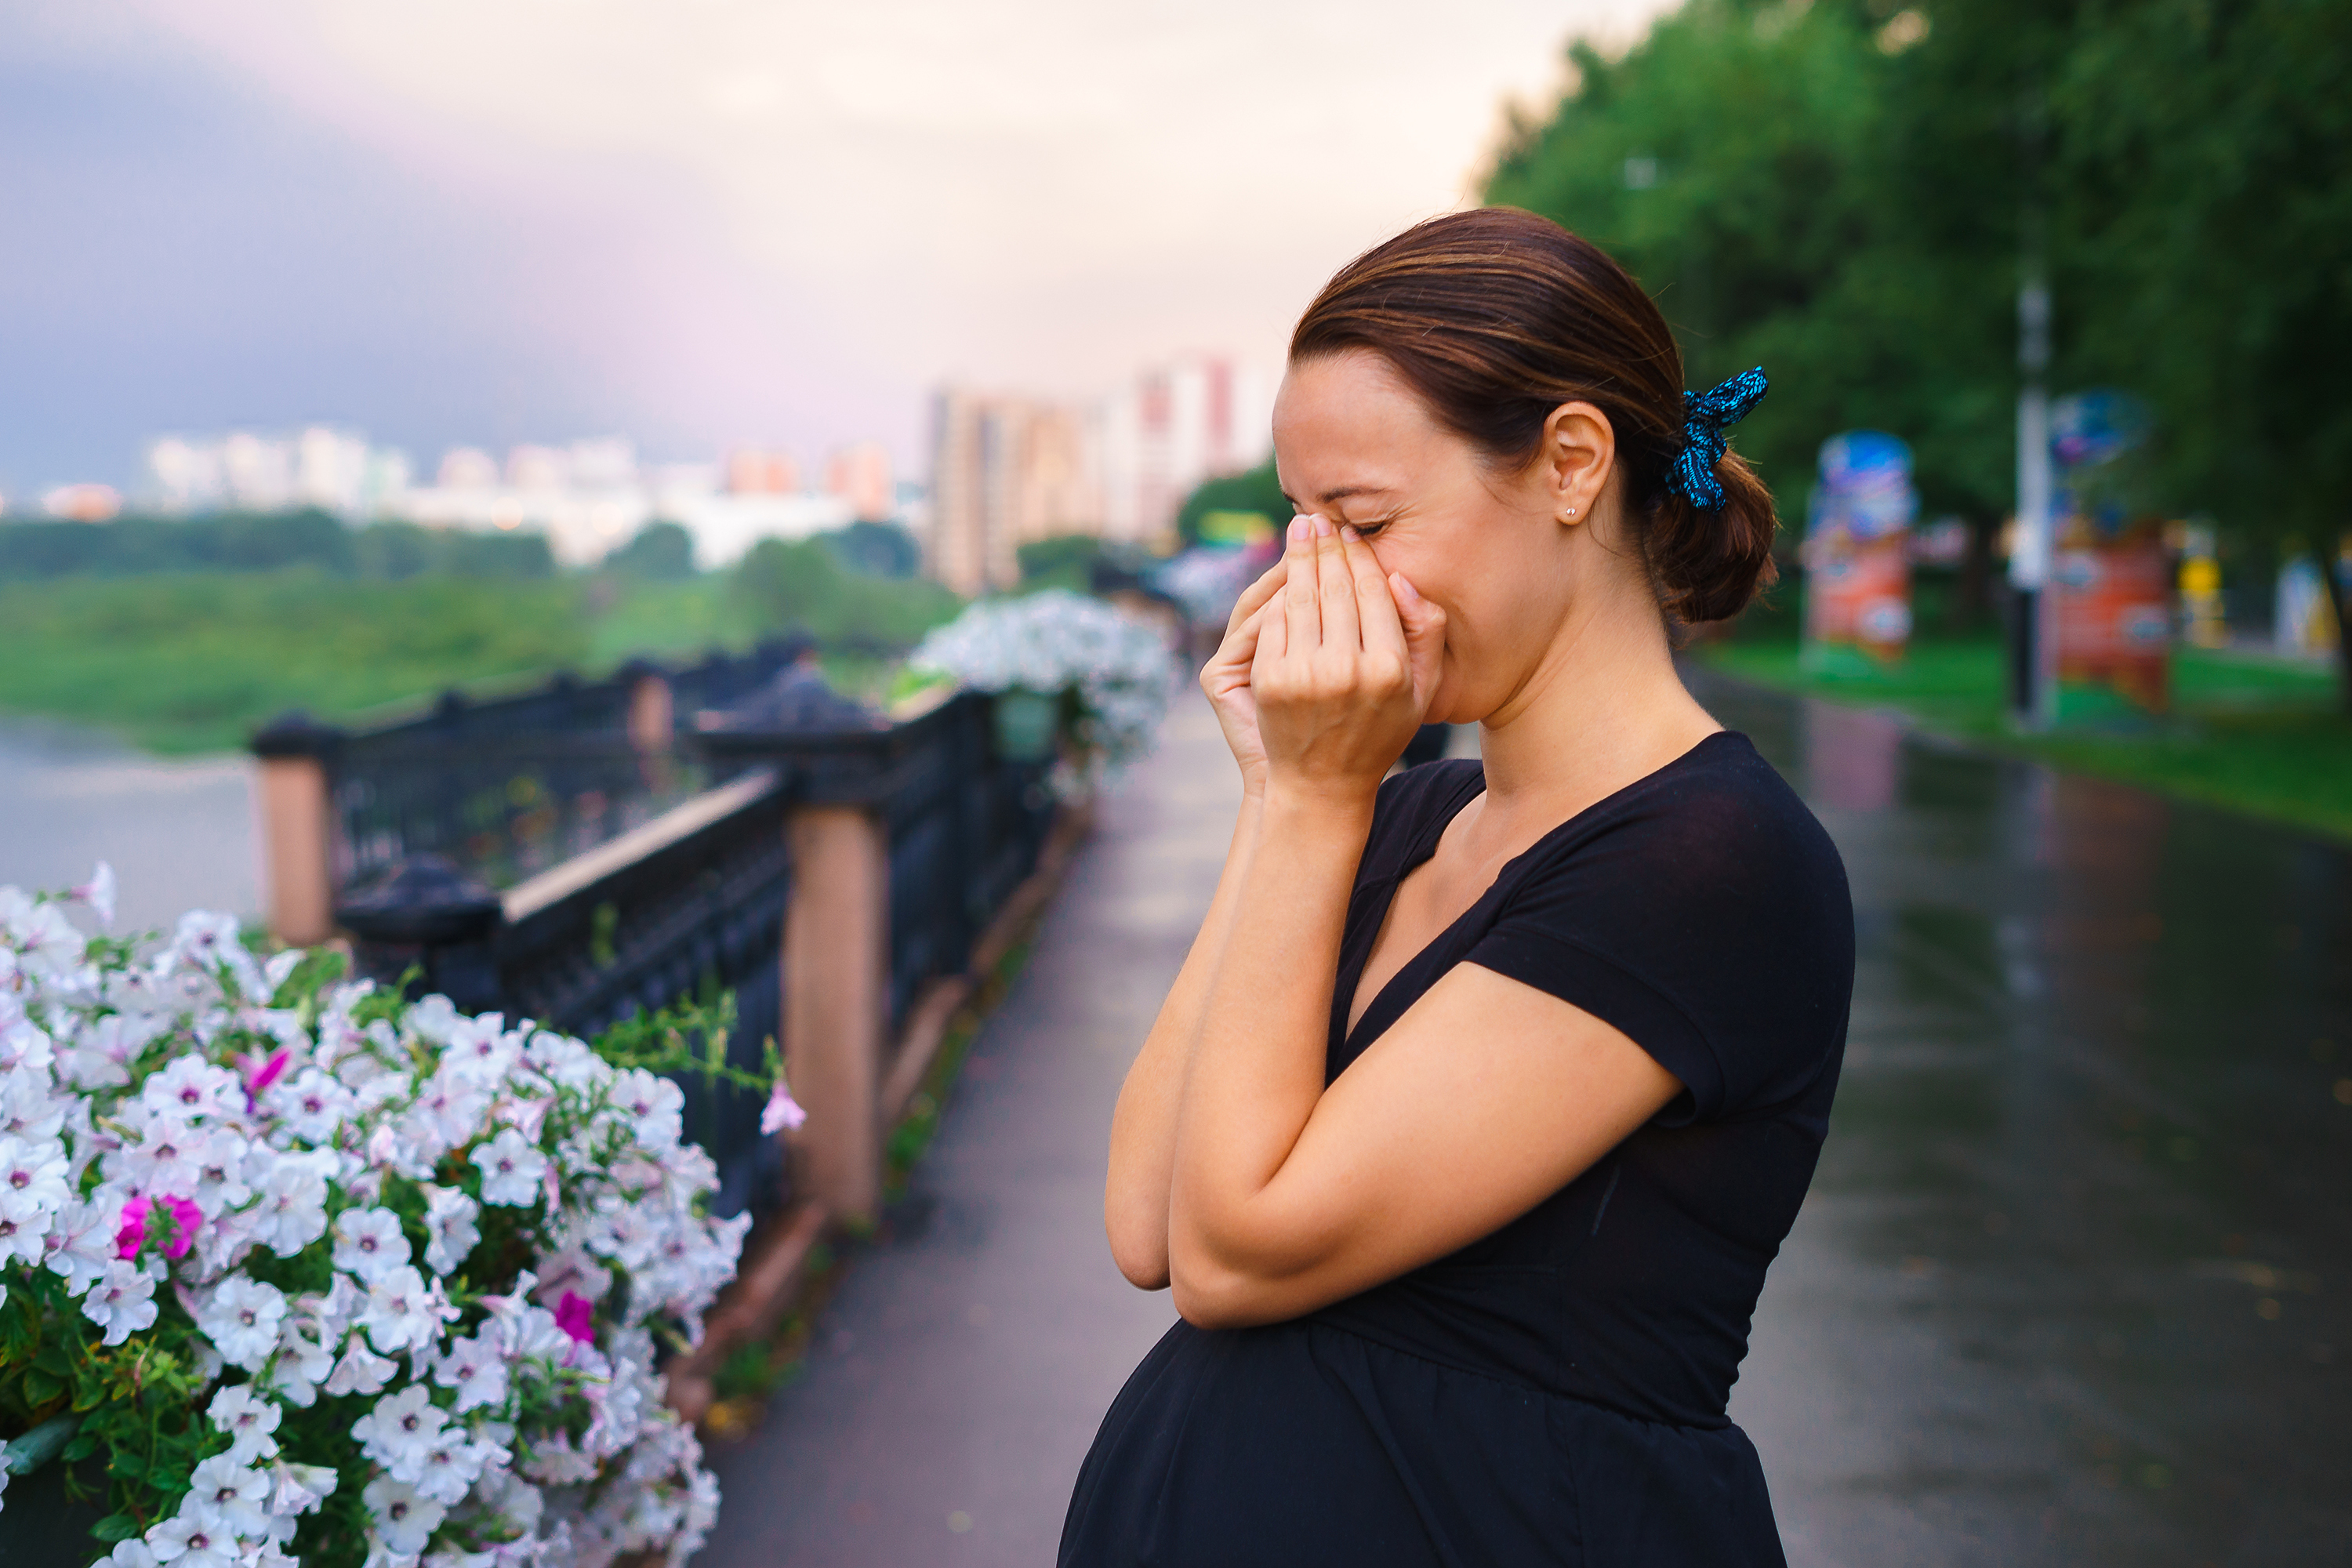 Eine weinende schwangere Frau | Quelle: Shutterstock